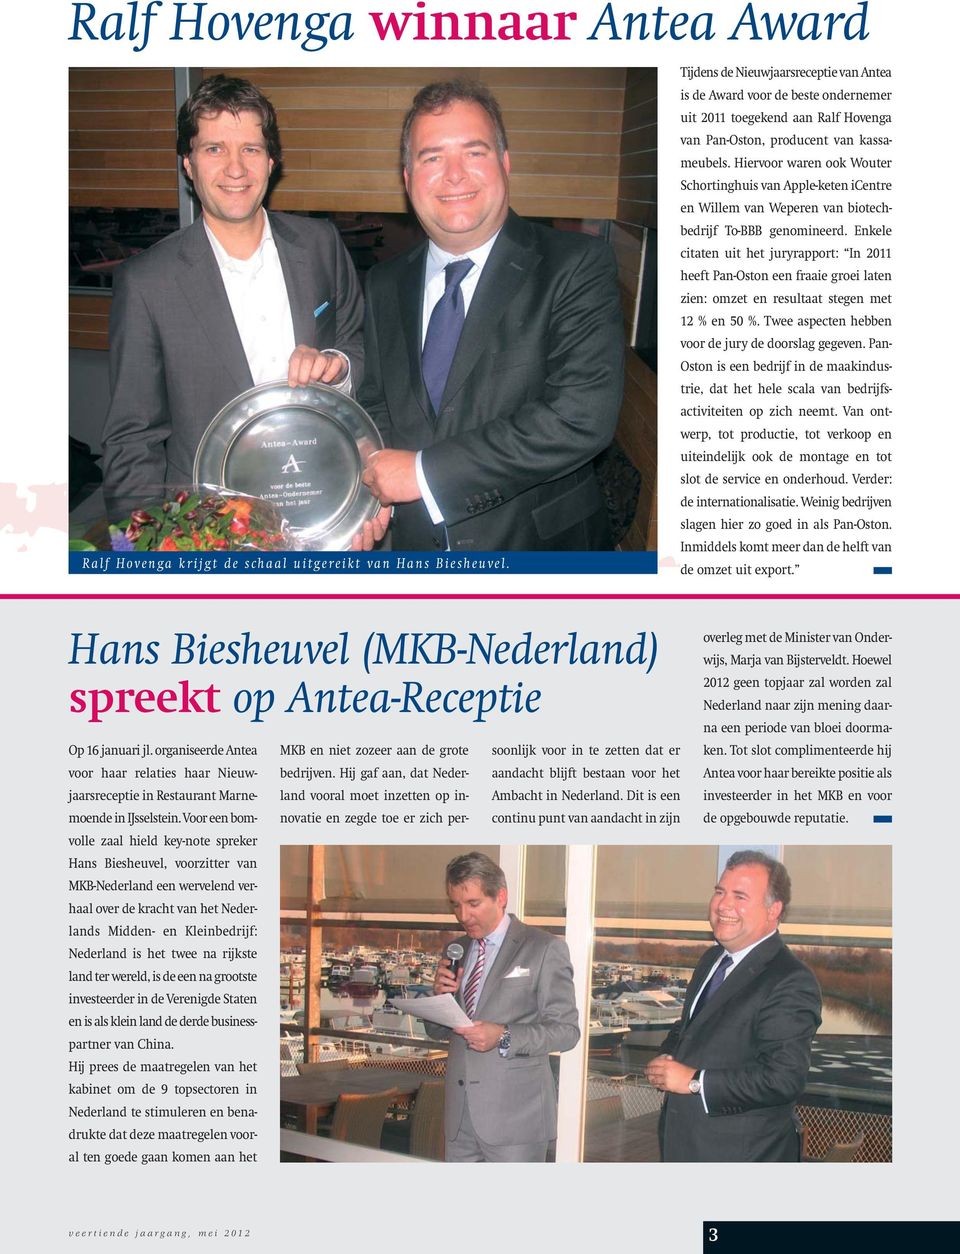 Hiervoor waren ook Wouter Schortinghuis van Apple-keten icentre en Willem van Weperen van biotechbedrijf To-BBB genomineerd.